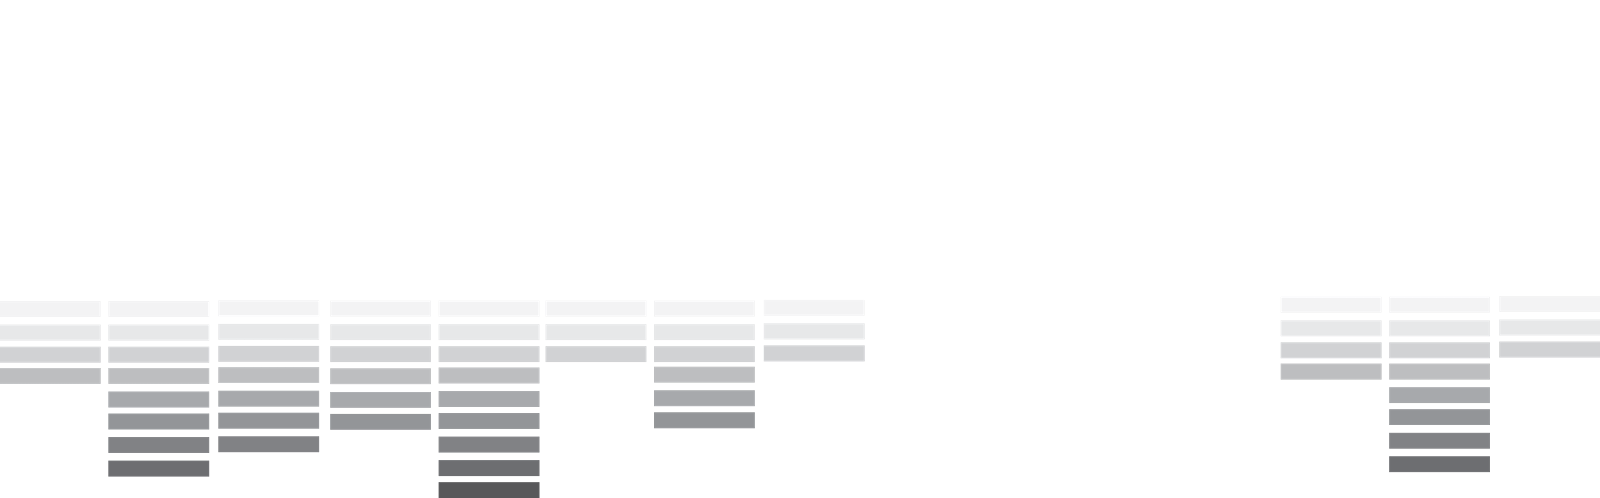 Virus Tails Audio